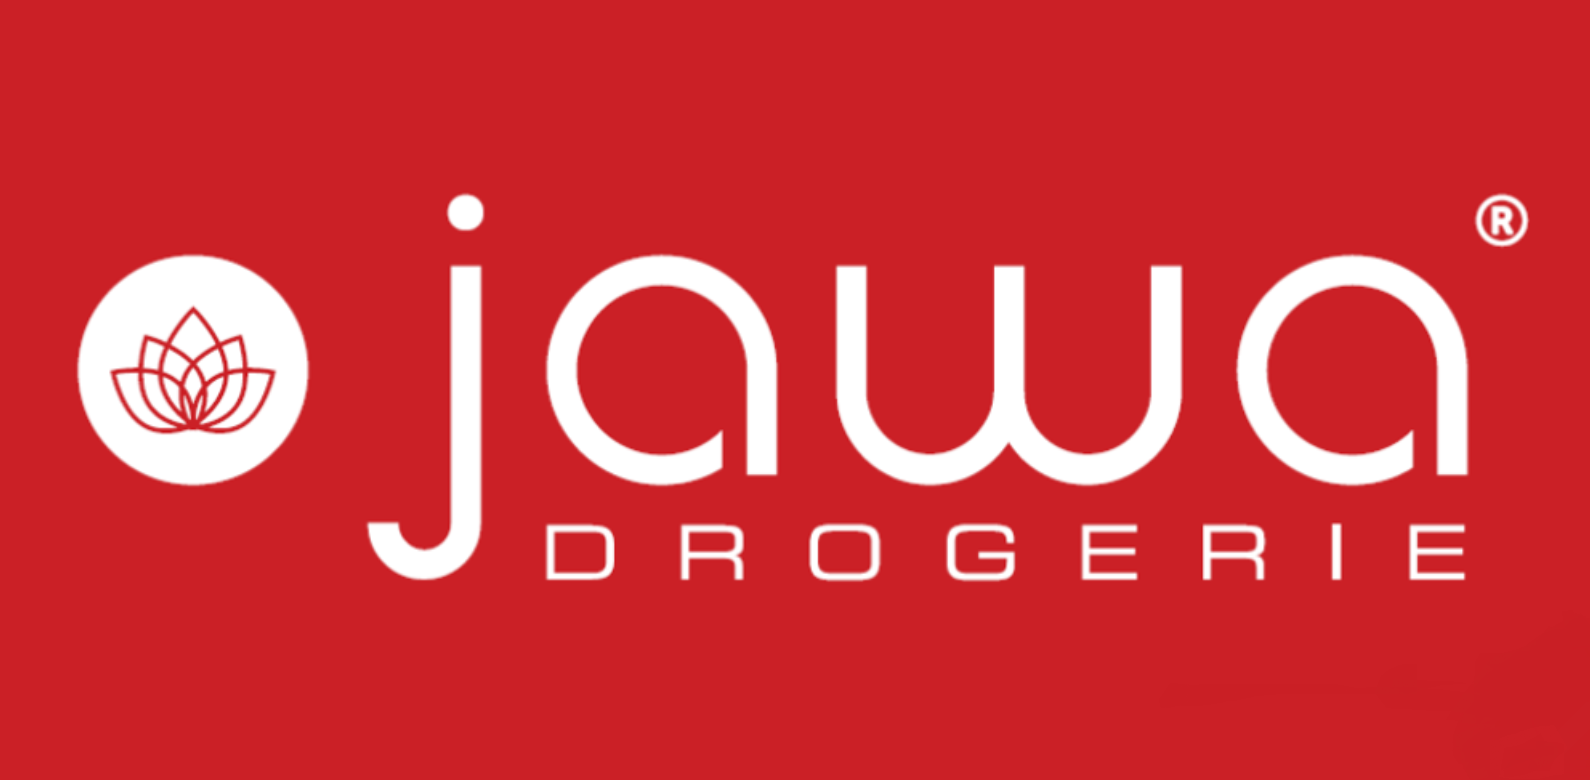 Pierwsza drogeria Jawa w Warszawie